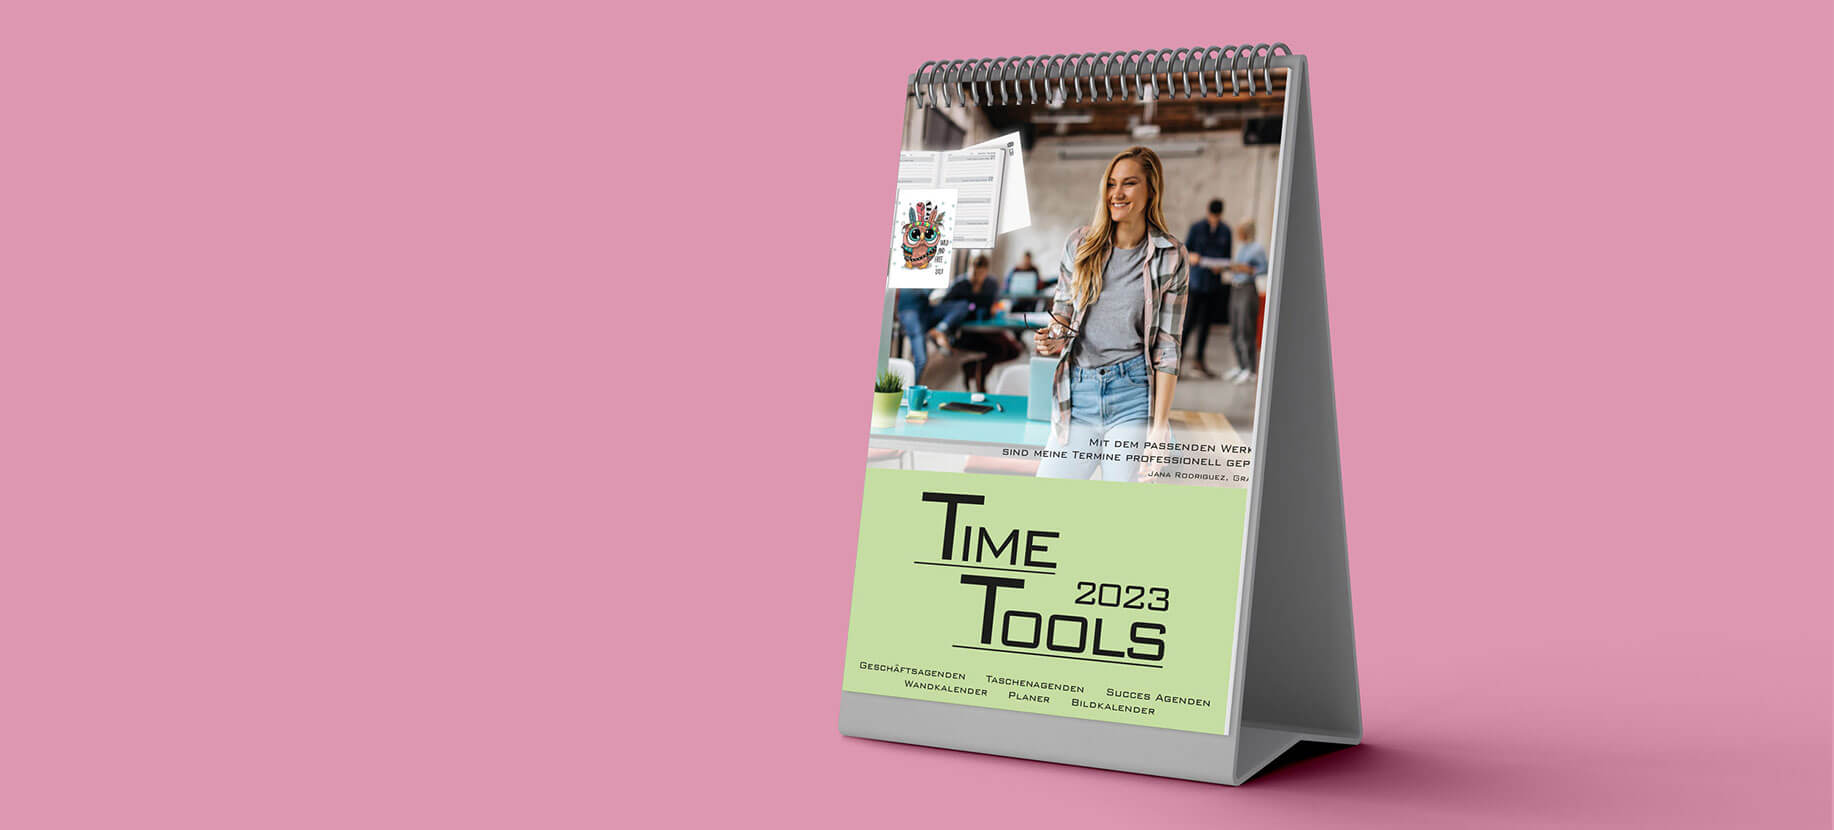 Time Tools als Download verfügbar